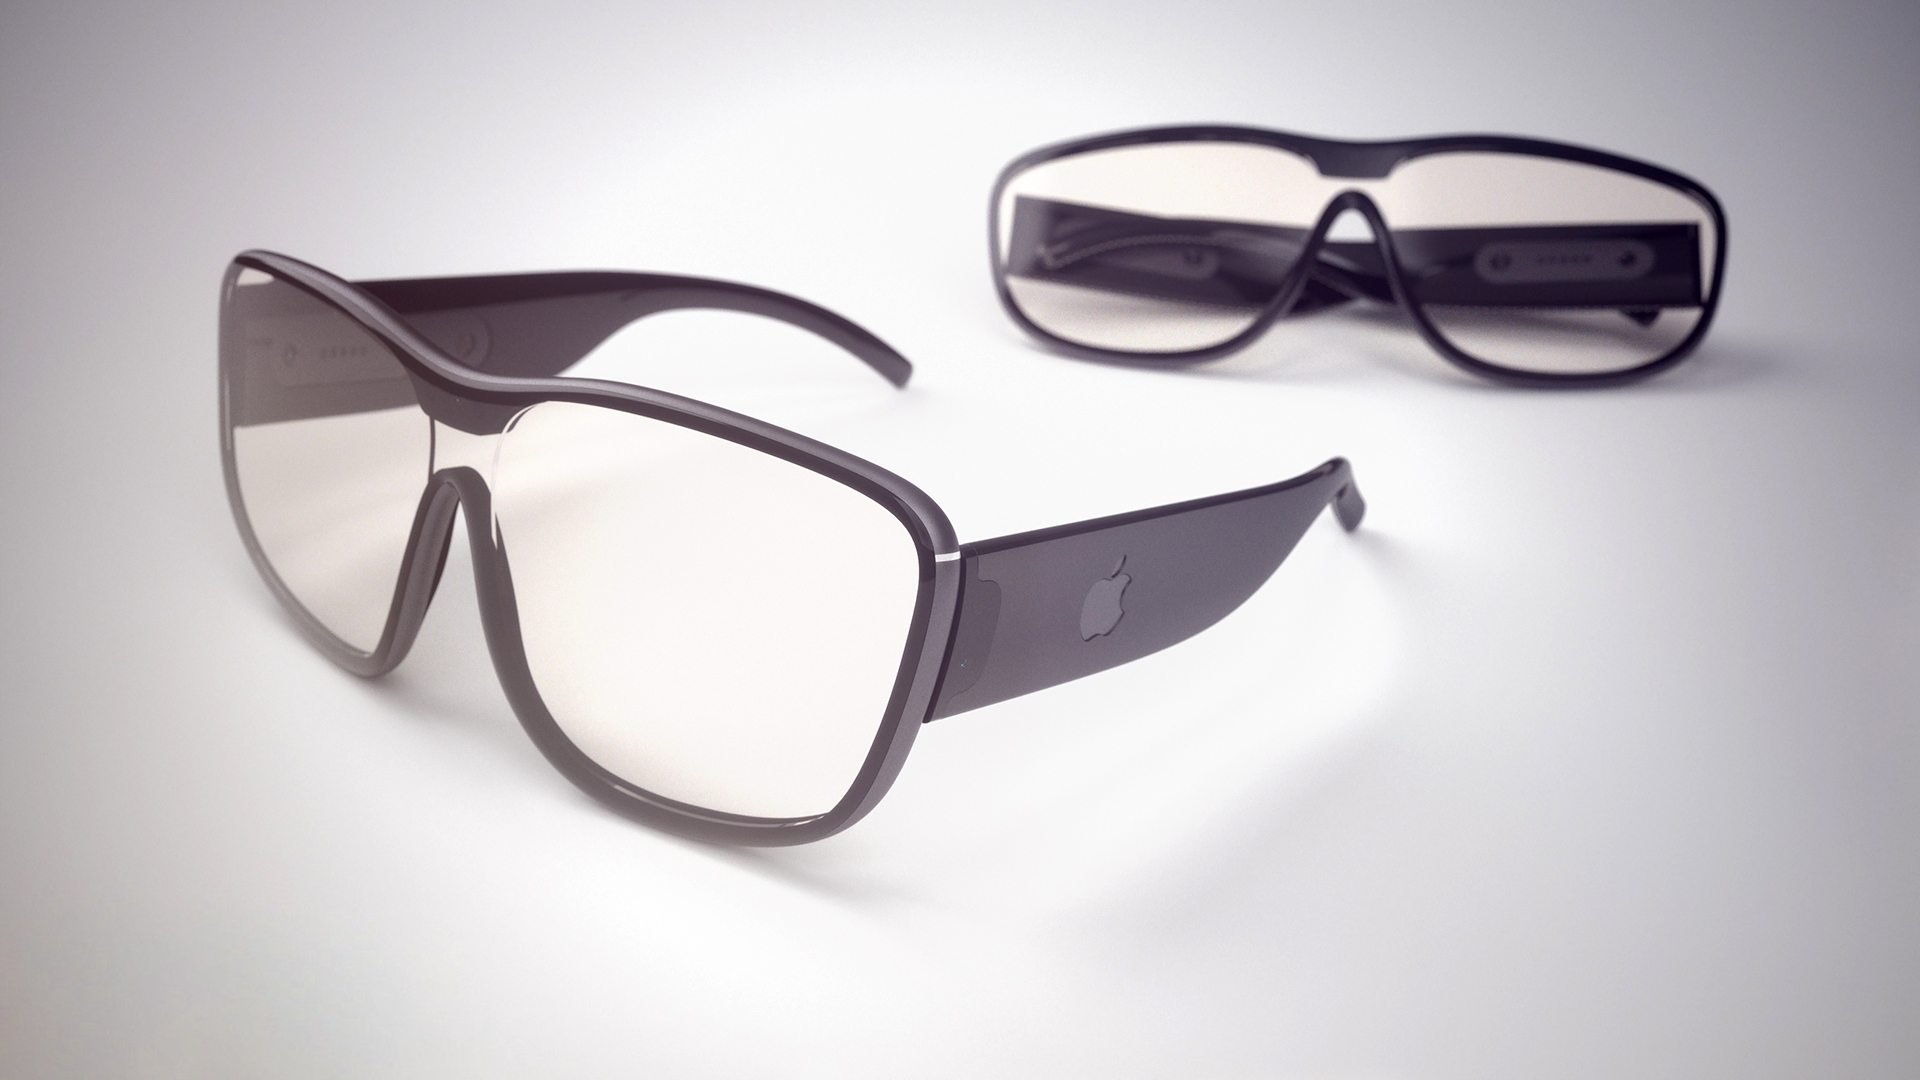 Apple Glasses concept render